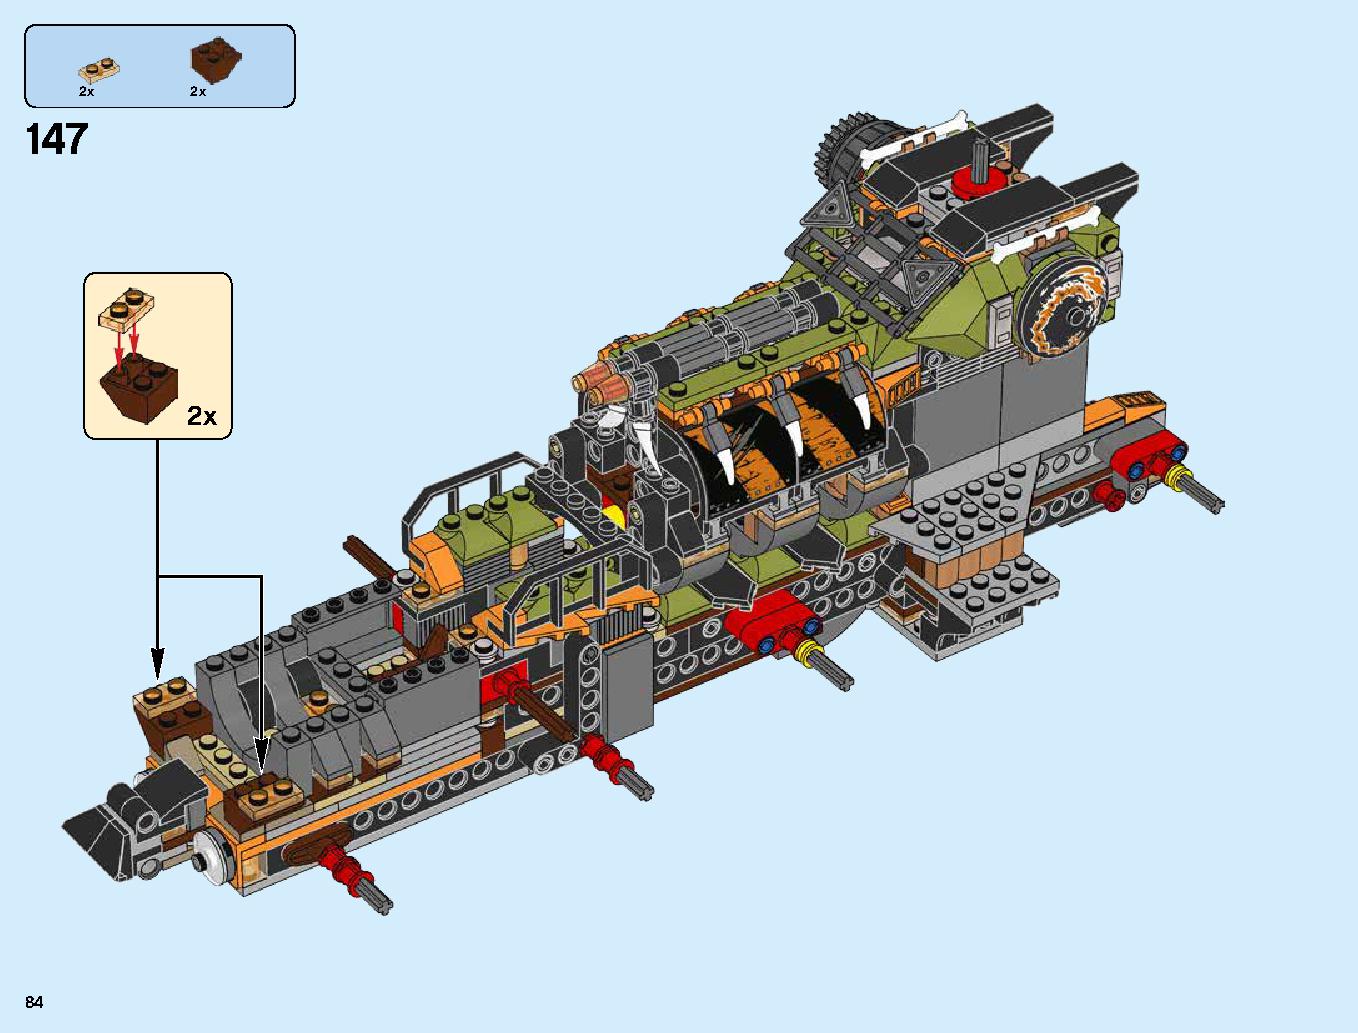 ハンティング・デスストライカー 70654 レゴの商品情報 レゴの説明書・組立方法 84 page